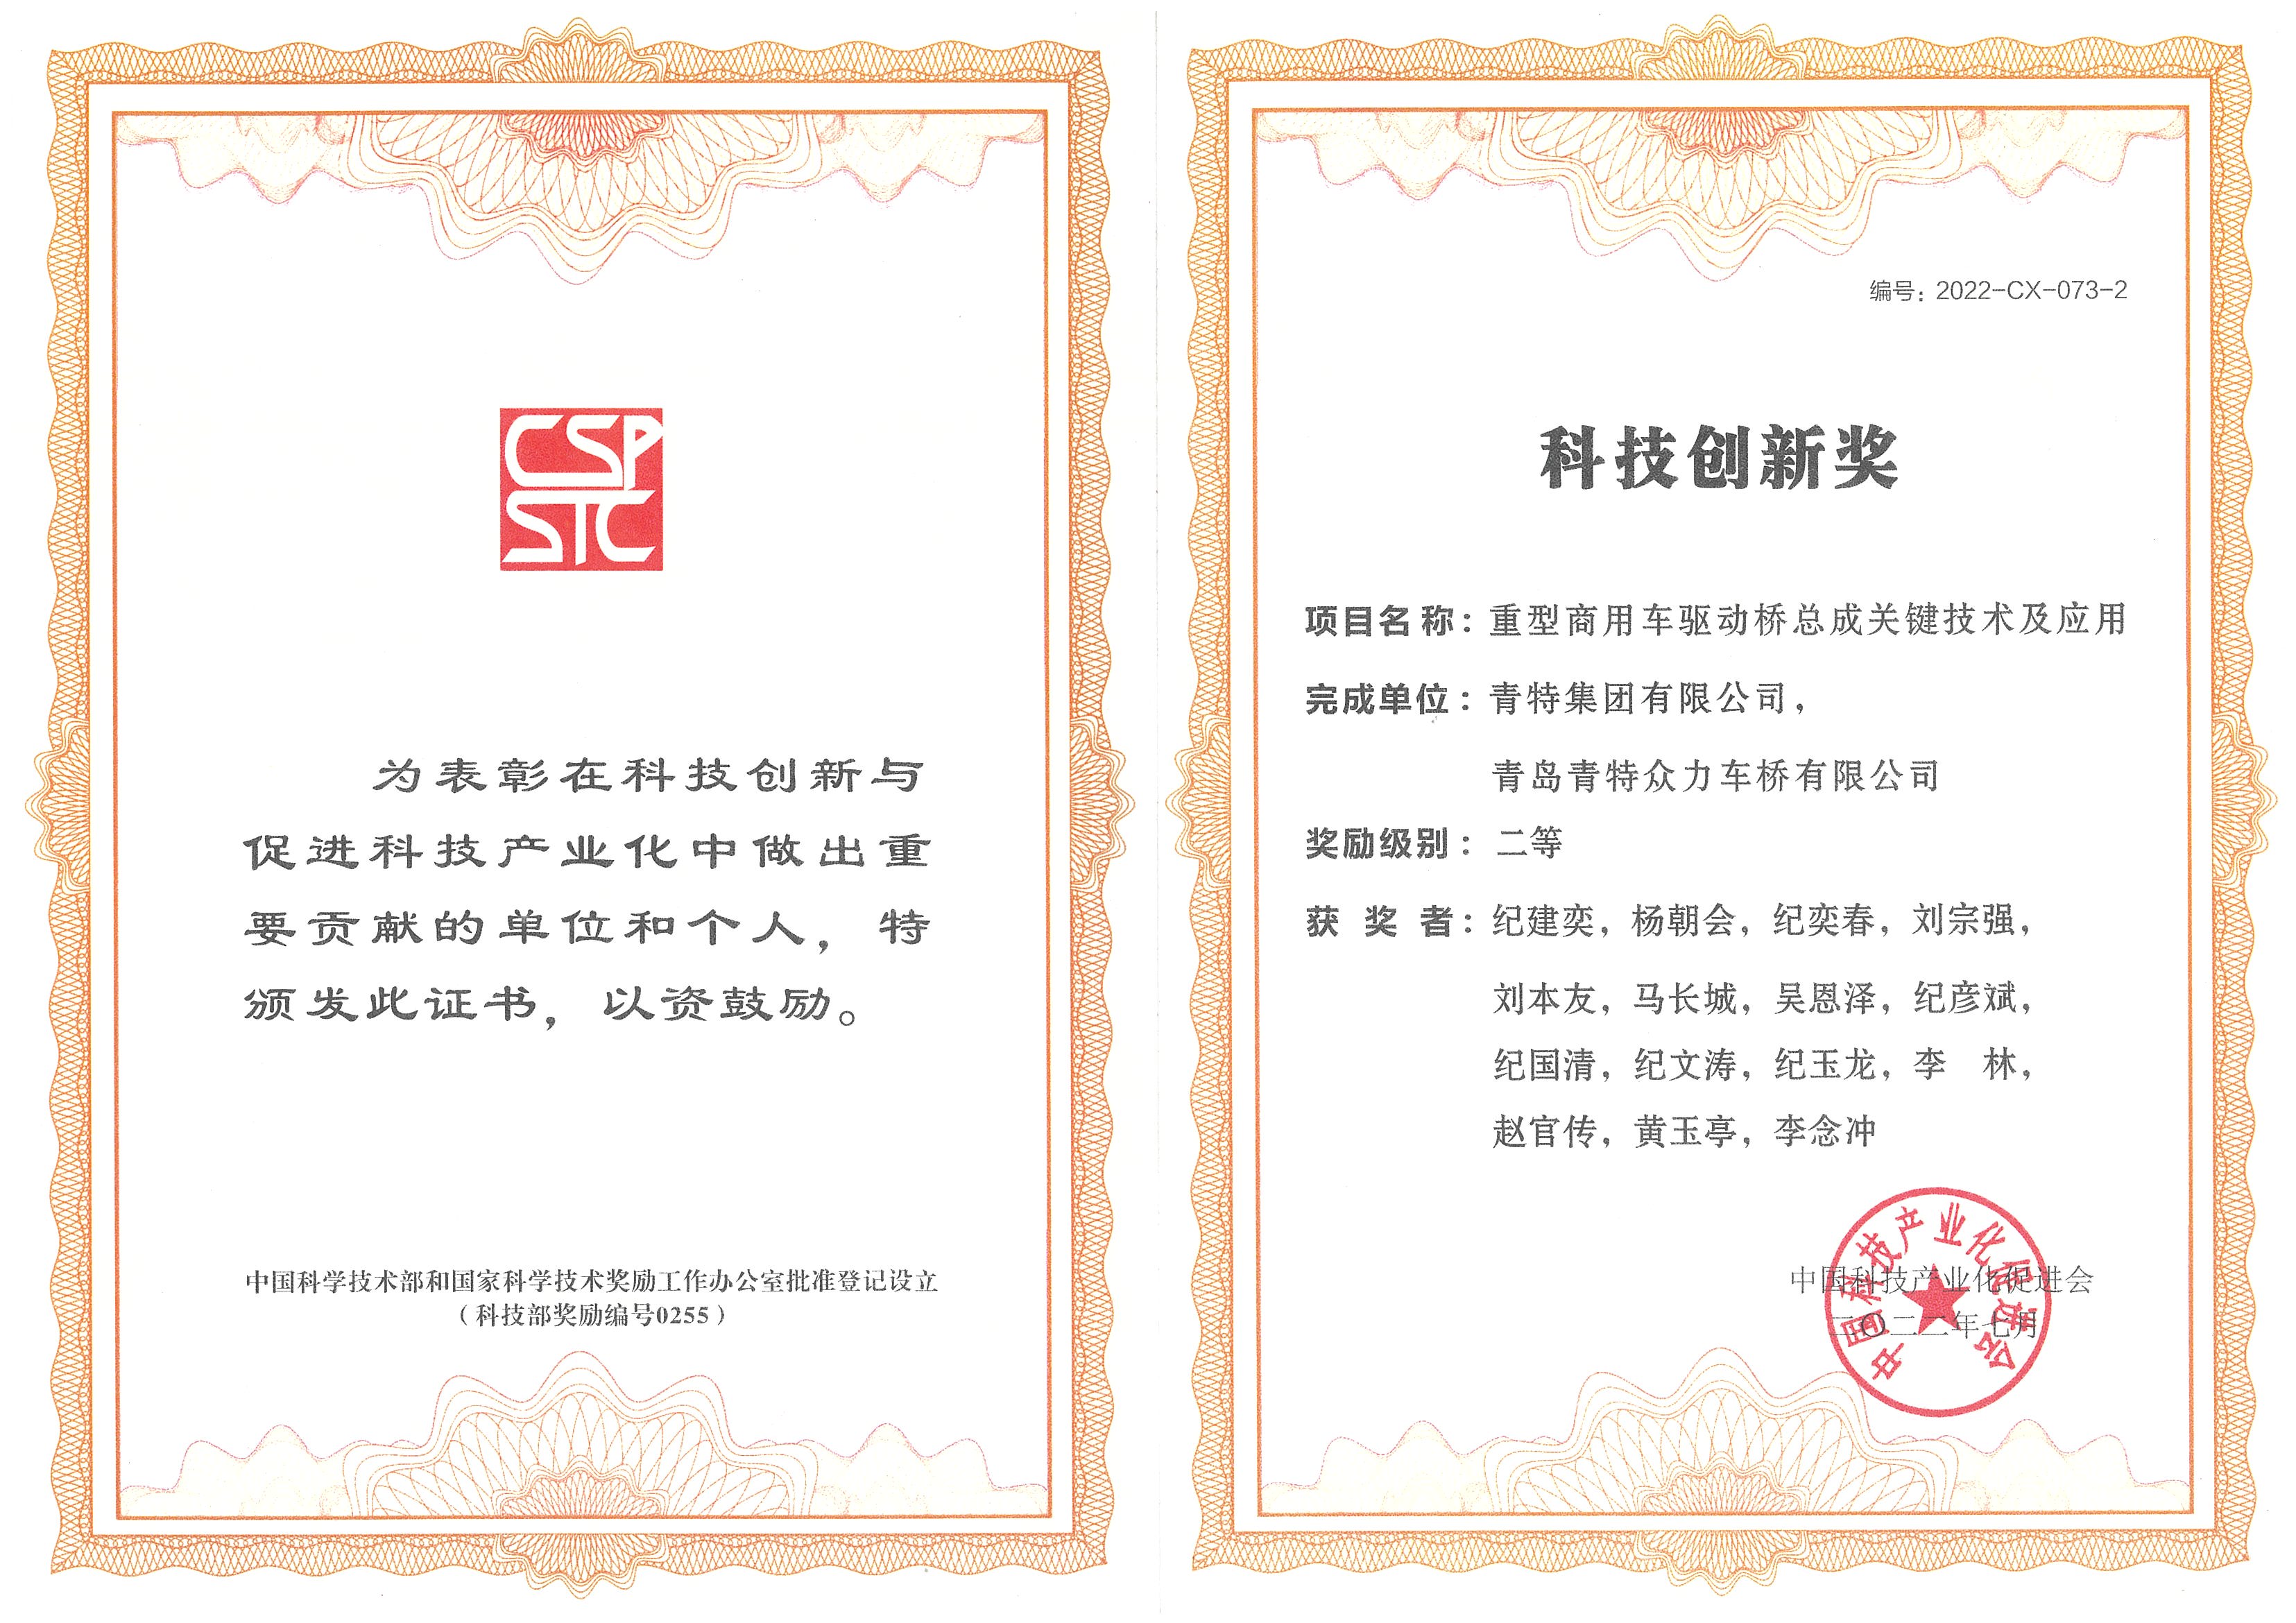 金沙1991cc集团“重型商用车驱动桥总成关键技术及应用”荣获 中国科技产业化科技创新奖